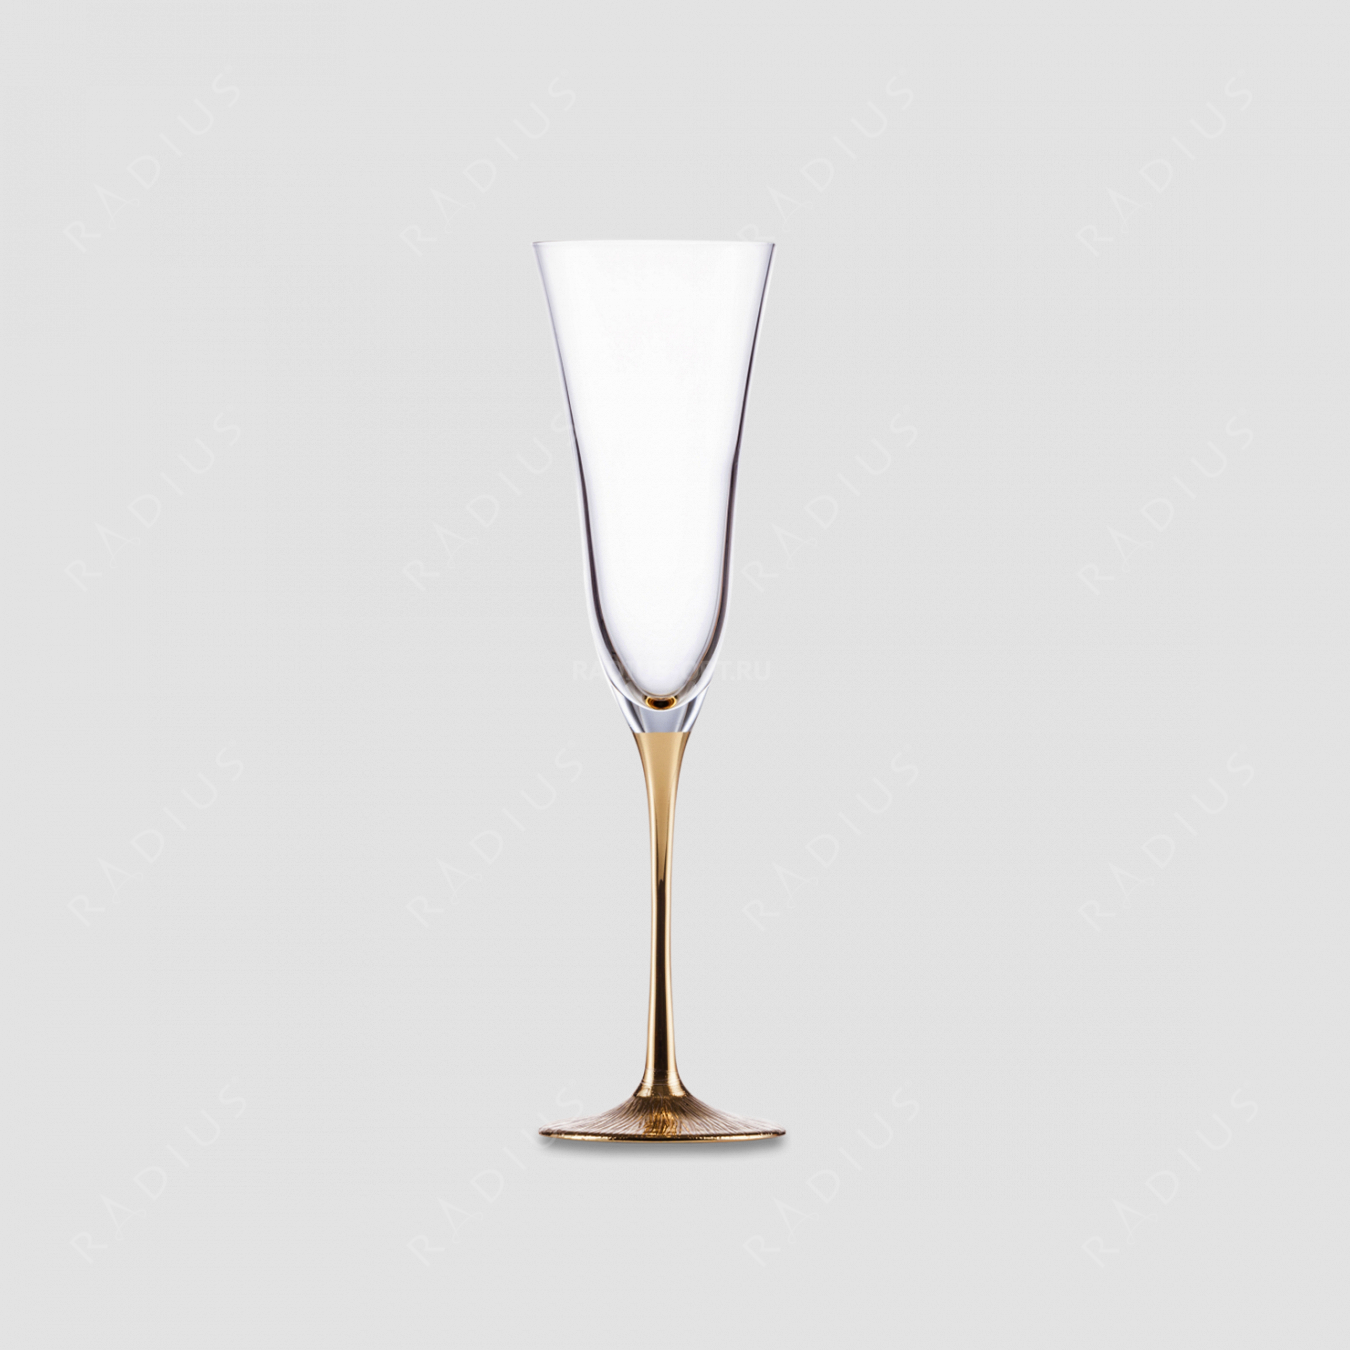 Хрустальный бокал для шампанского Gold, объем: 165 мл, материал: бессвинцовый хрусталь, цвет: прозрачный/золото, серия Ravi, EISCH, Германия